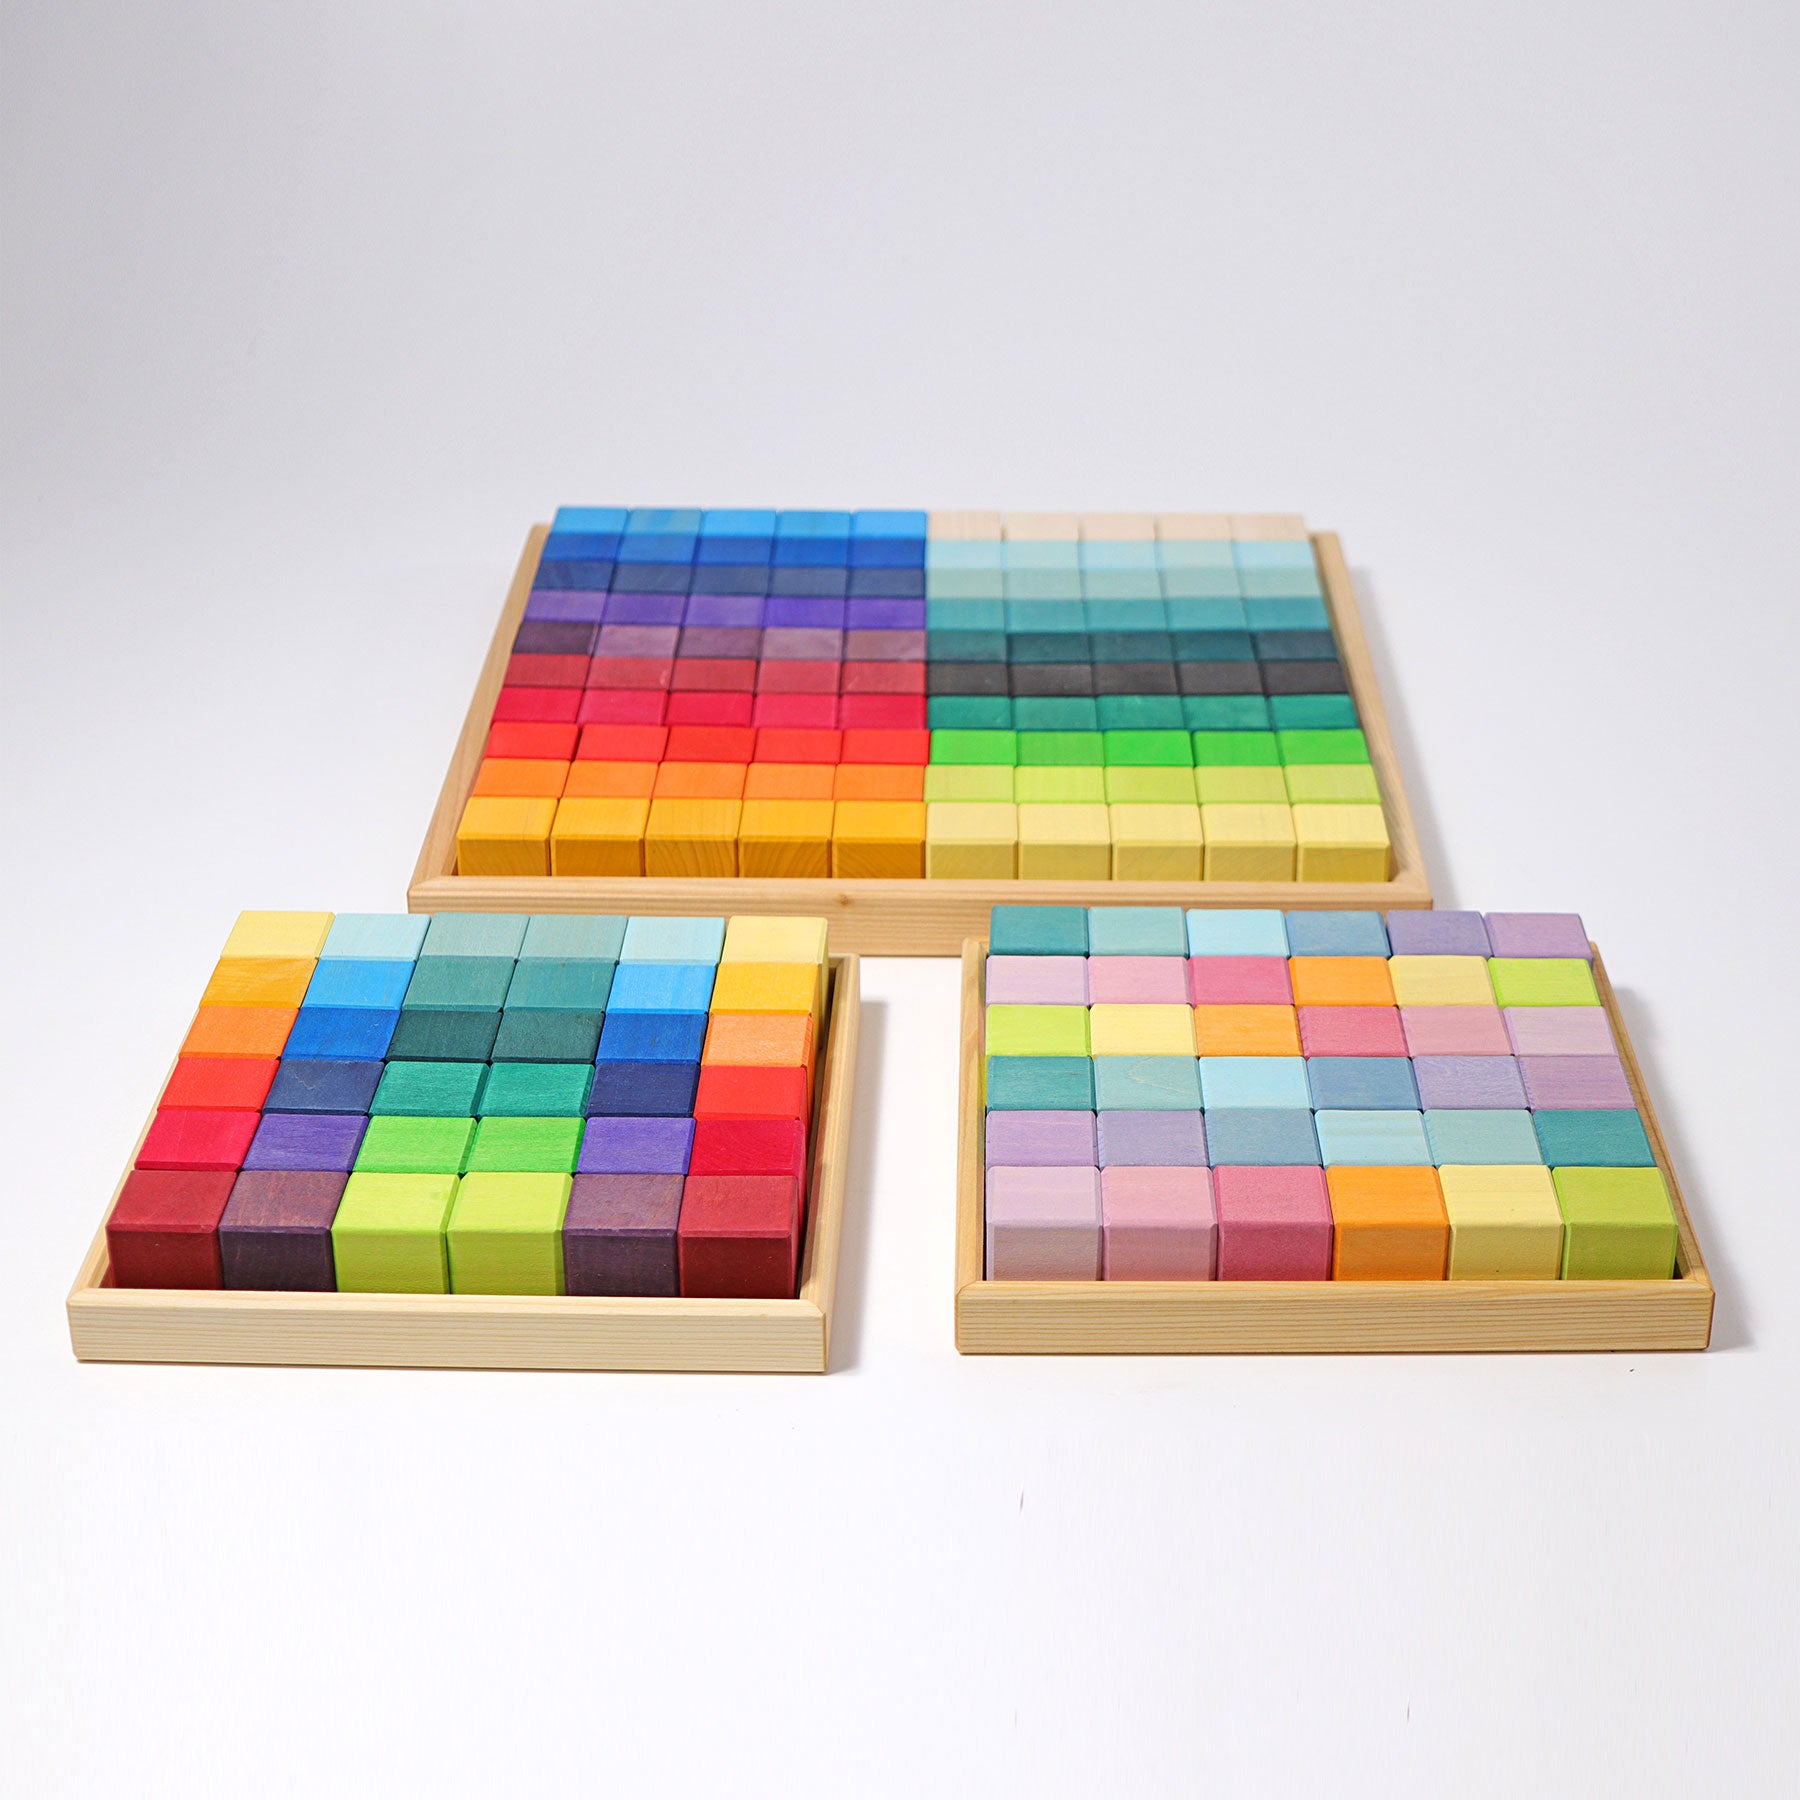 Grimms Mosaic Rainbow Block Set | 36 Pieces | Wooden Block Sets | 12+ Months | Children of the Wild